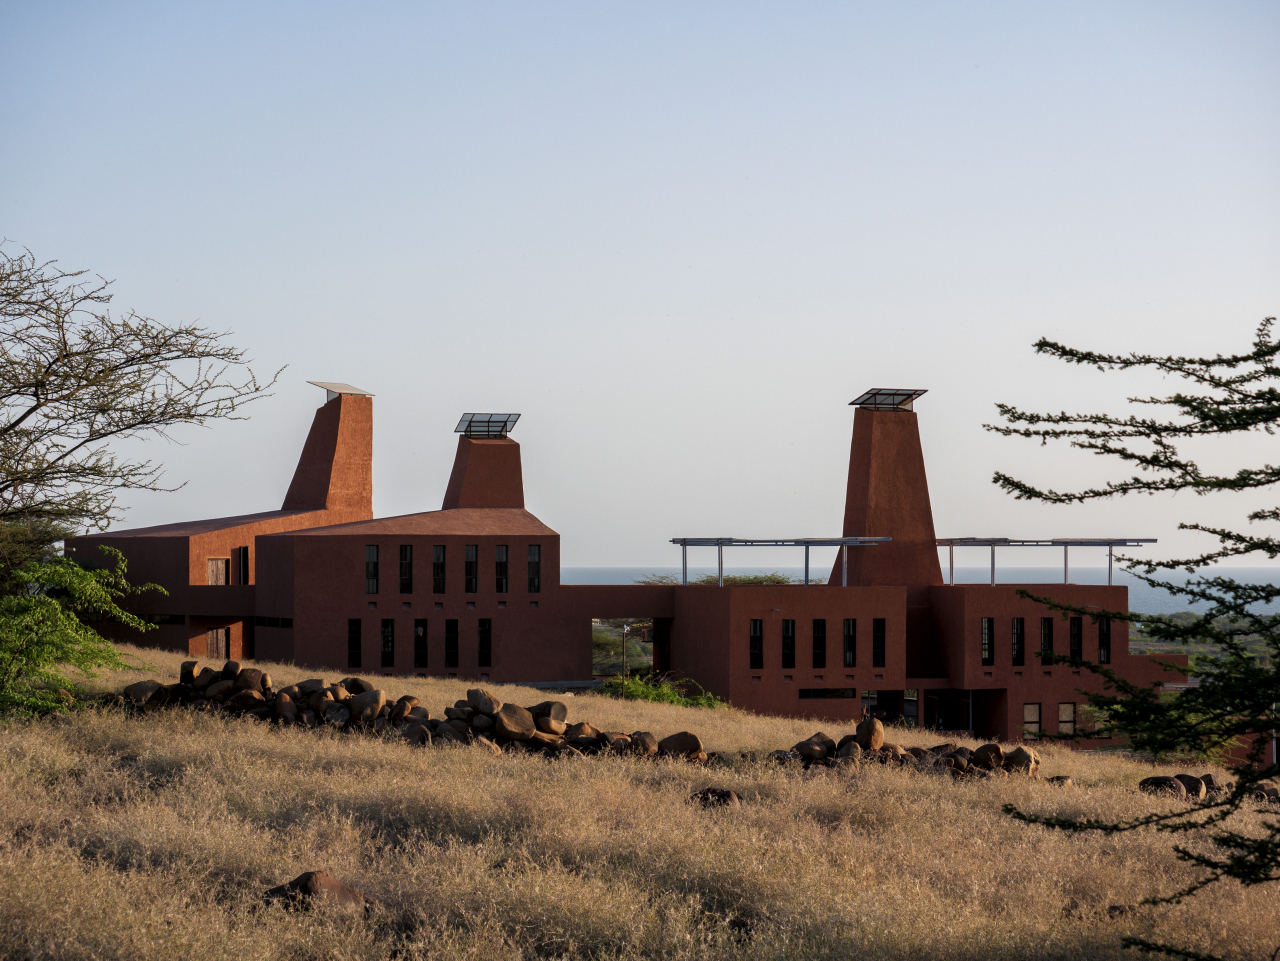 The Startup Lions Campus in Kenya, designed by Diébédo Francis Kéré (Kinan Deep for Kéré Architecture)